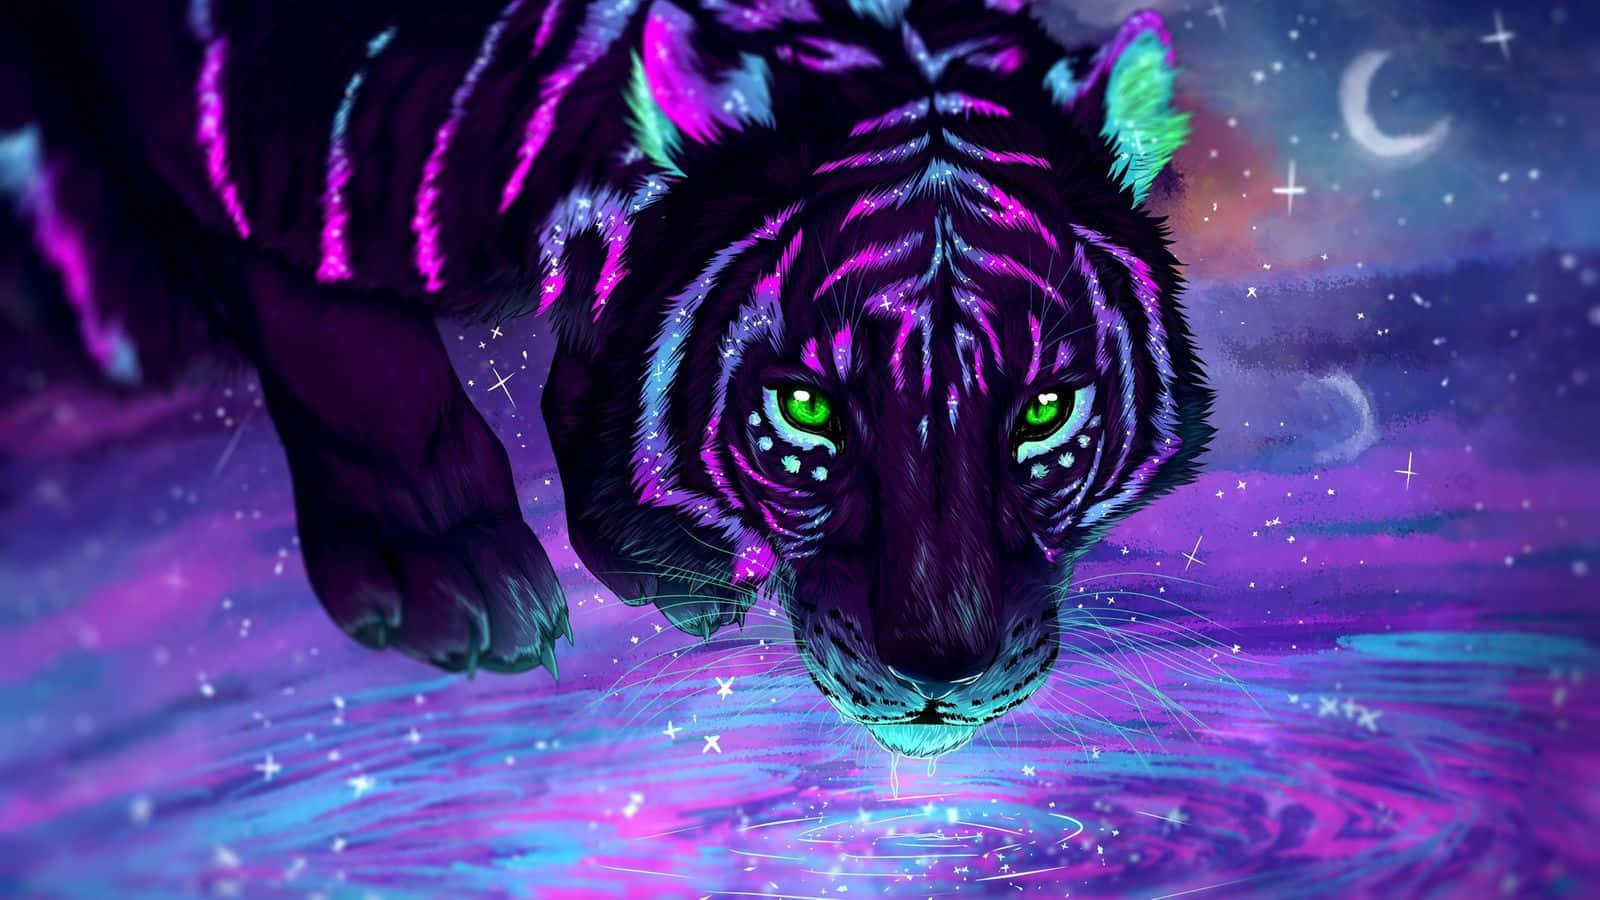 Cute Tiger Neon Art Picture